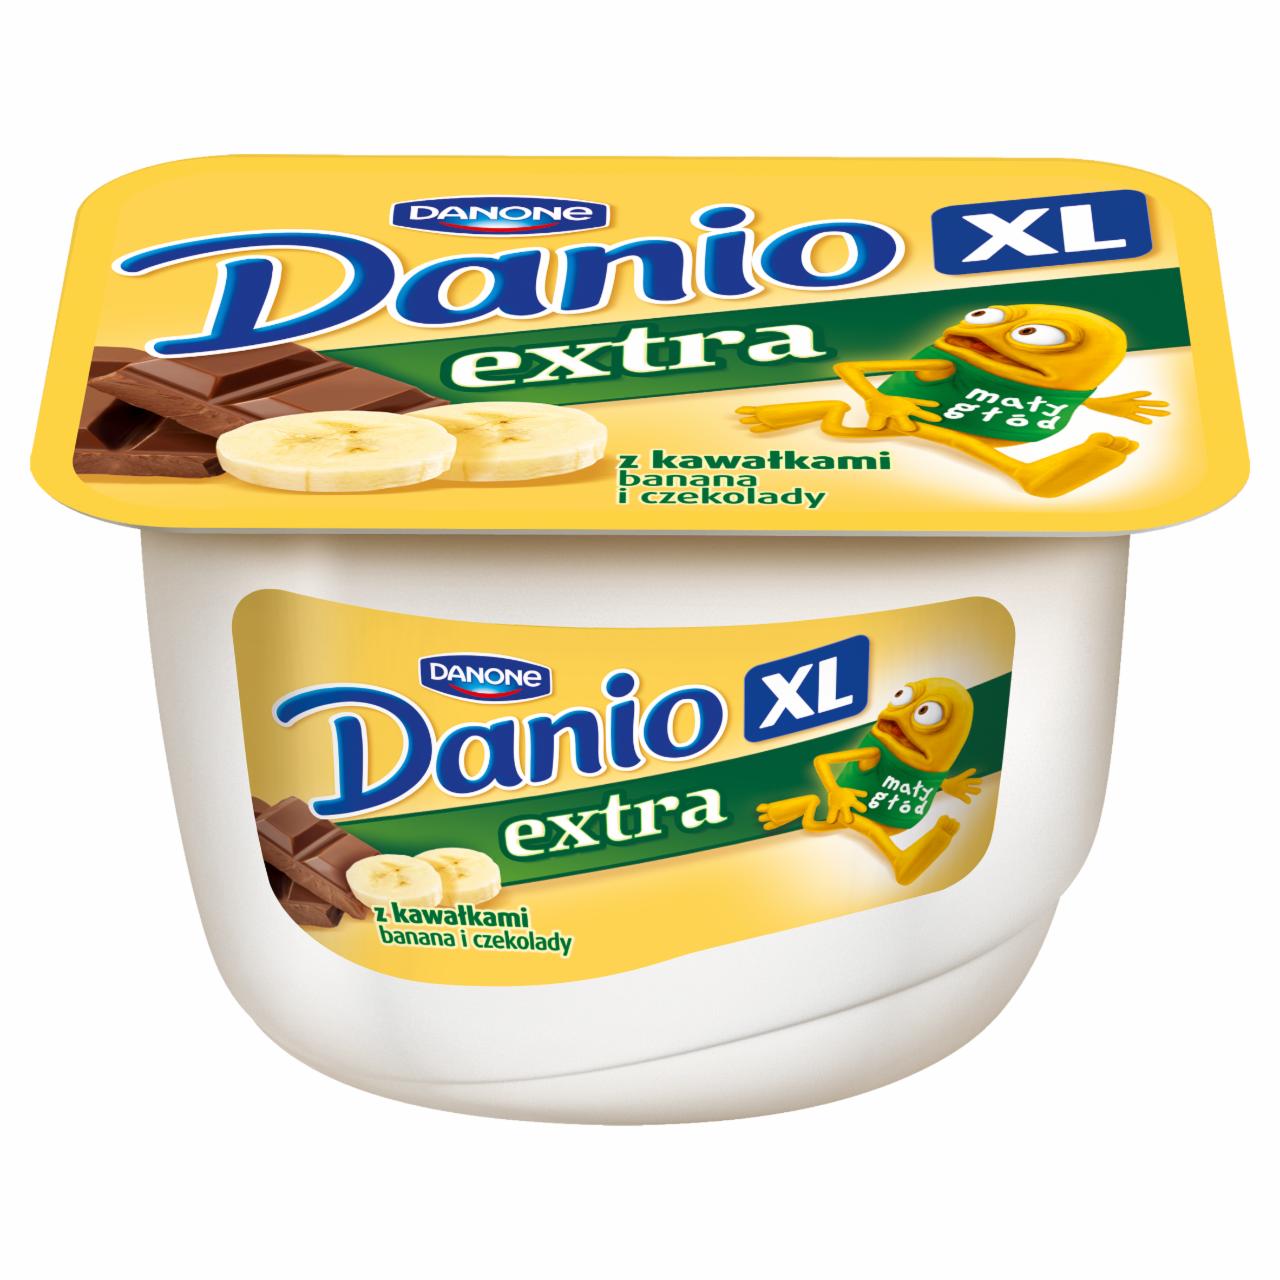 Zdjęcia - Danone Danio XL extra Serek homogenizowany z kawałkami banana i czekolady 180 g